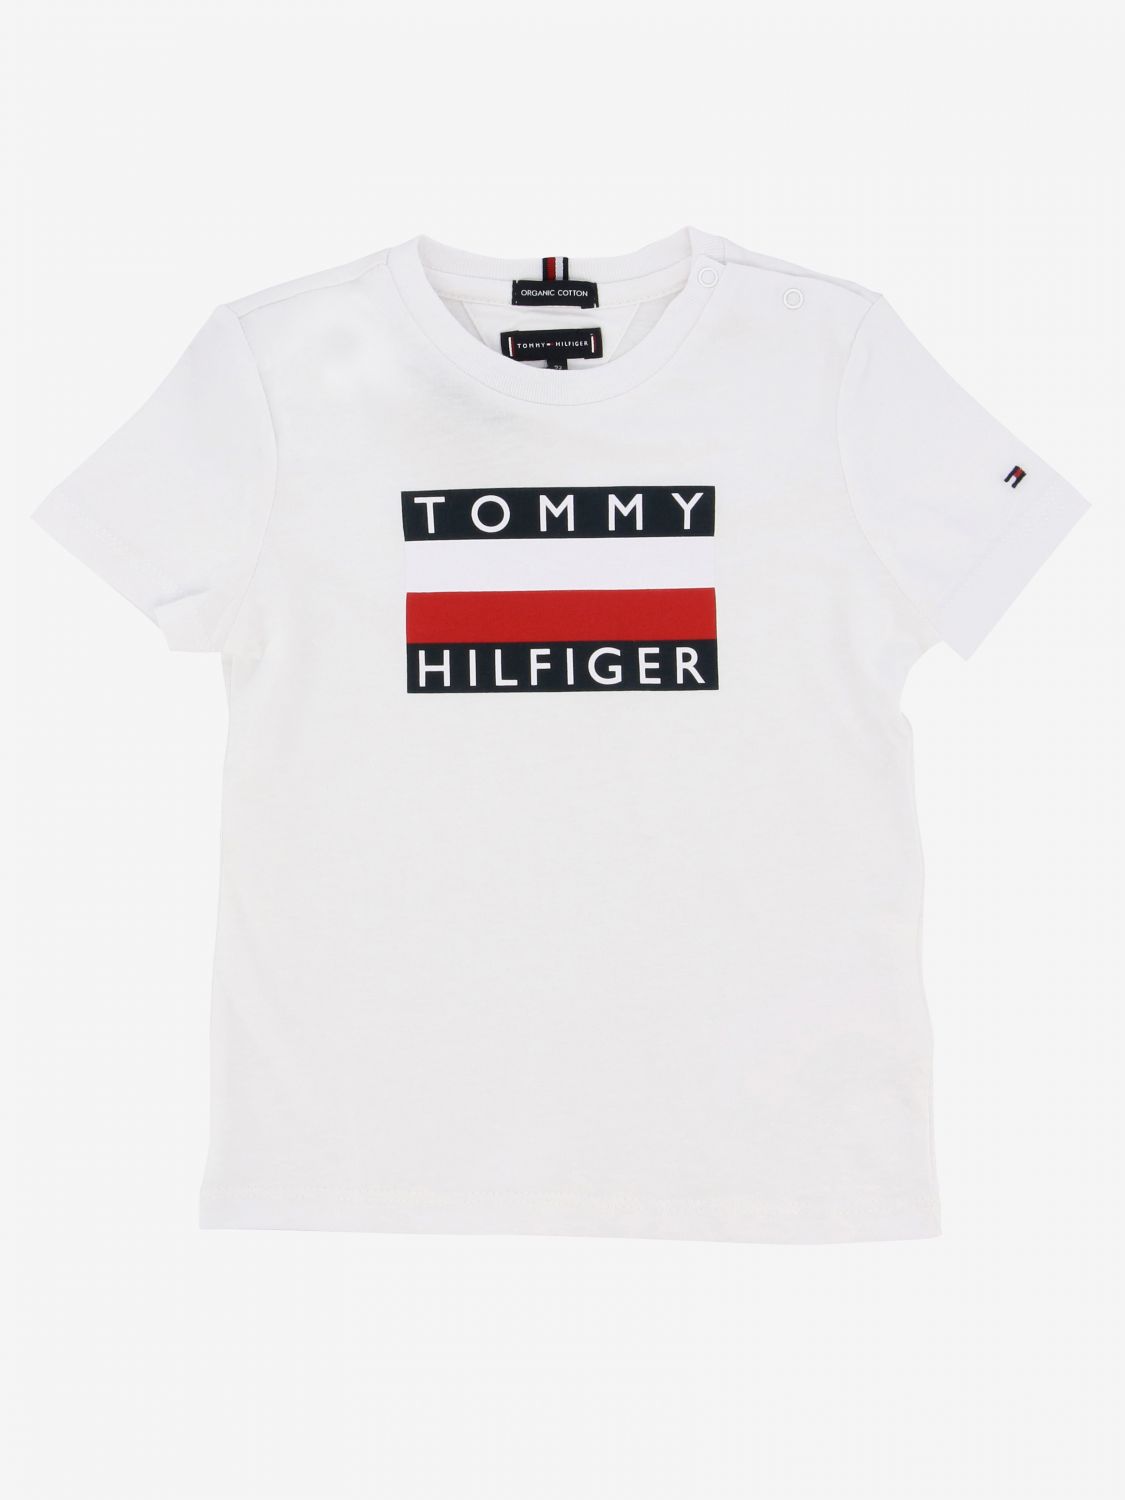 tommy hilfiger t shirt for kids